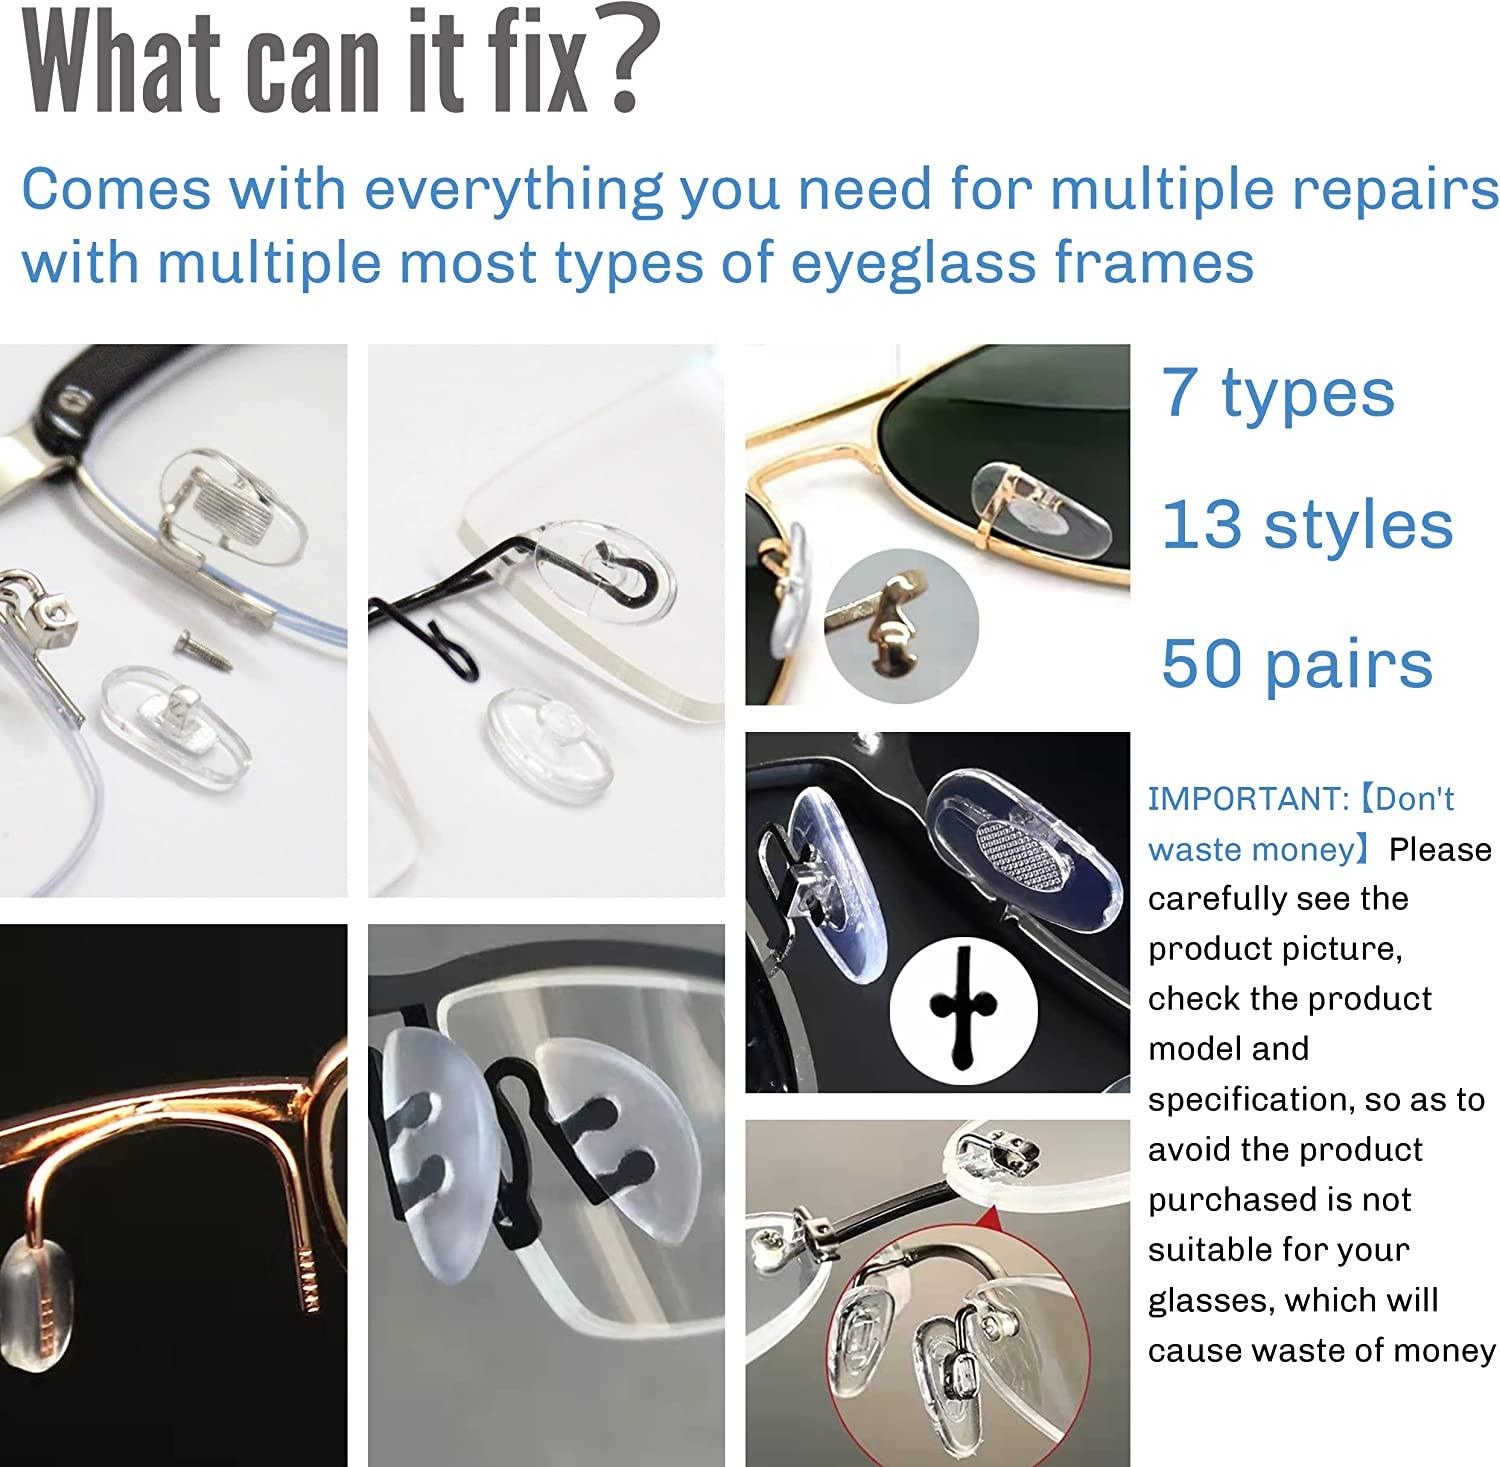 Repairing nose pads on eyeglasses - iFixit Repair Guide